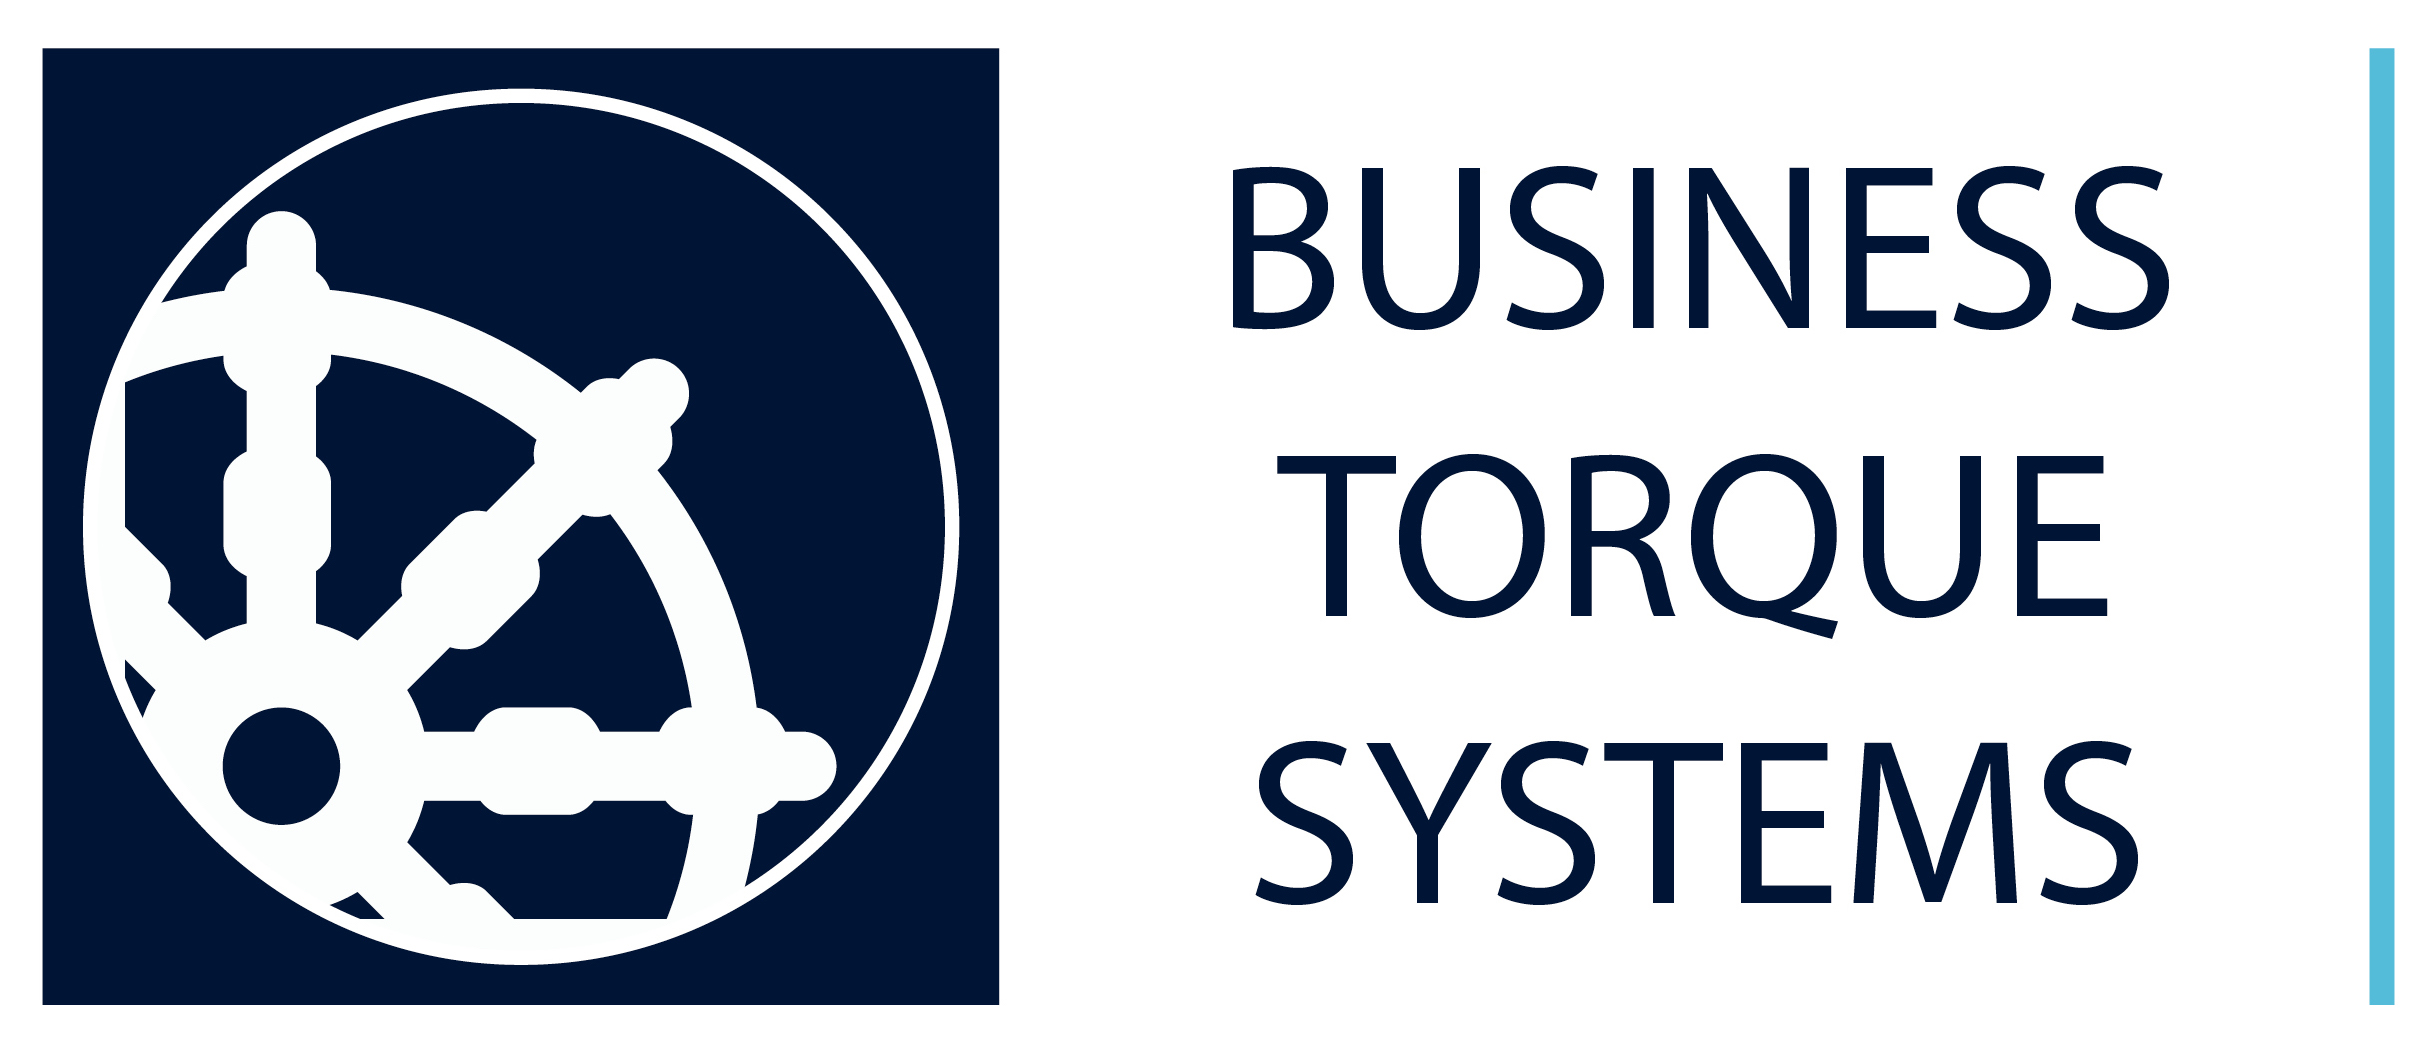 Business Torque Systems company logo